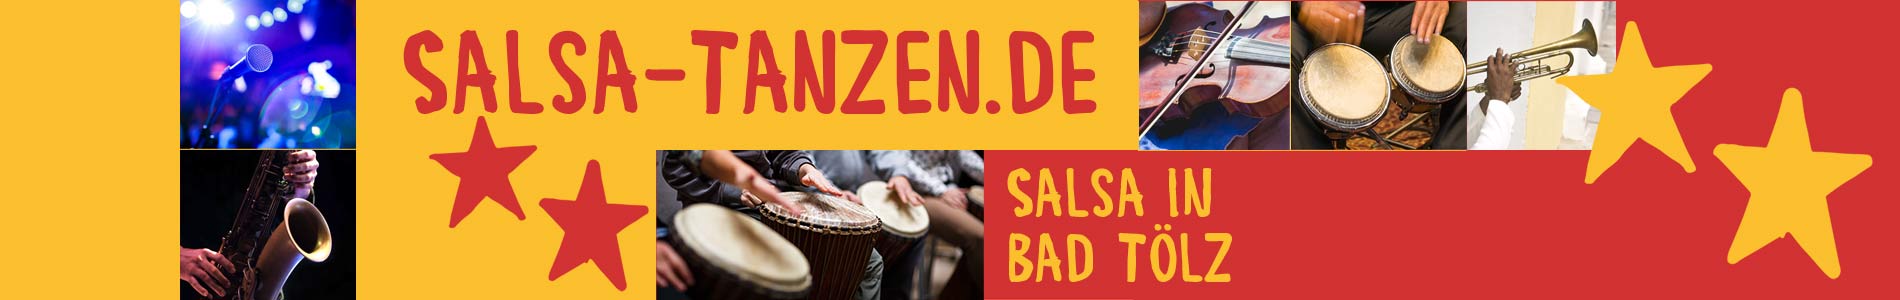 Salsa in Bad Tölz – Salsa lernen und tanzen, Tanzkurse, Partys, Veranstaltungen